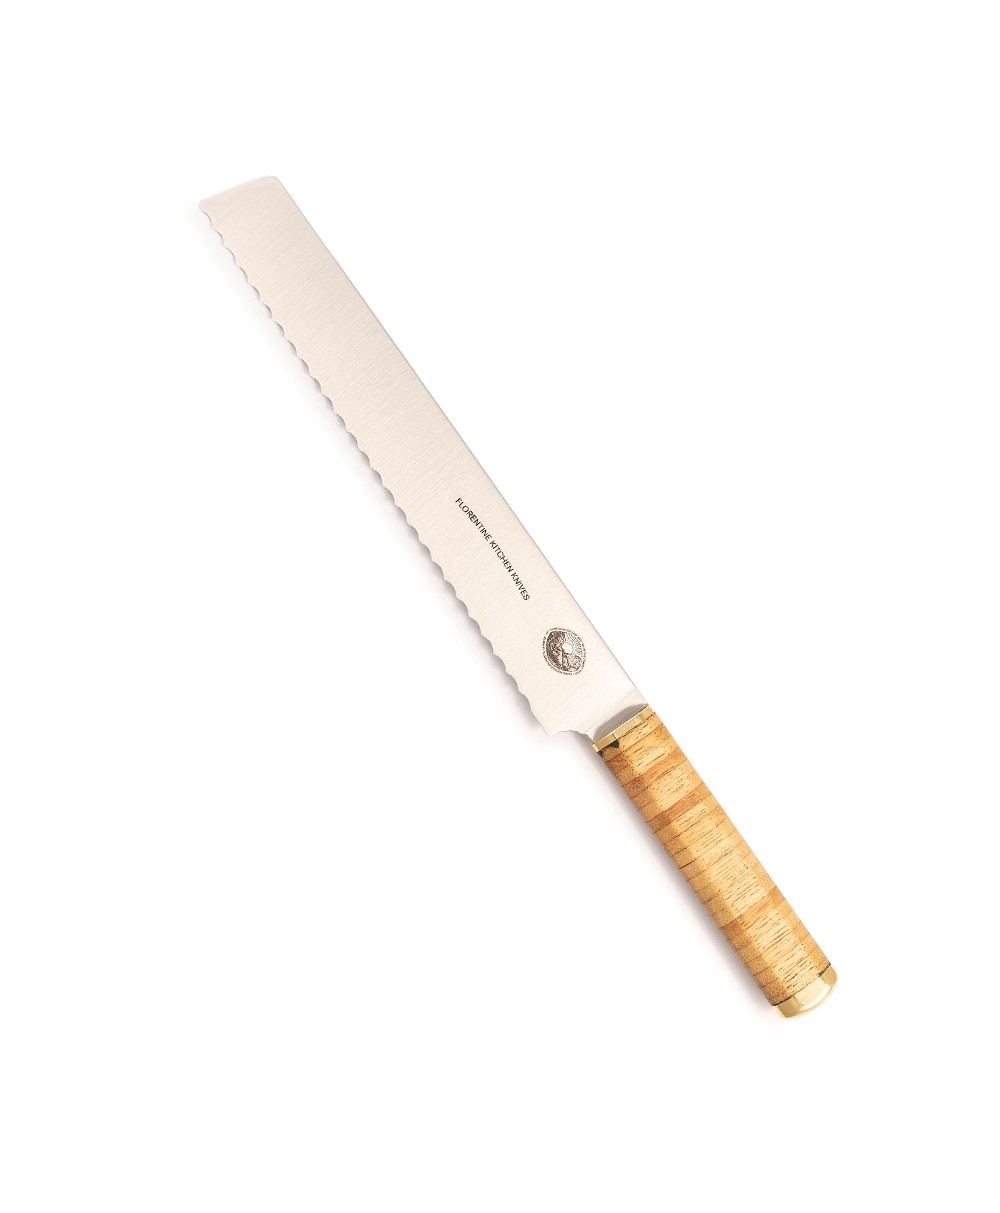 Produktbild des Kedma Pankiri Brotmesser in wood von Florentine Kitchen Knives im RAUM concept store 